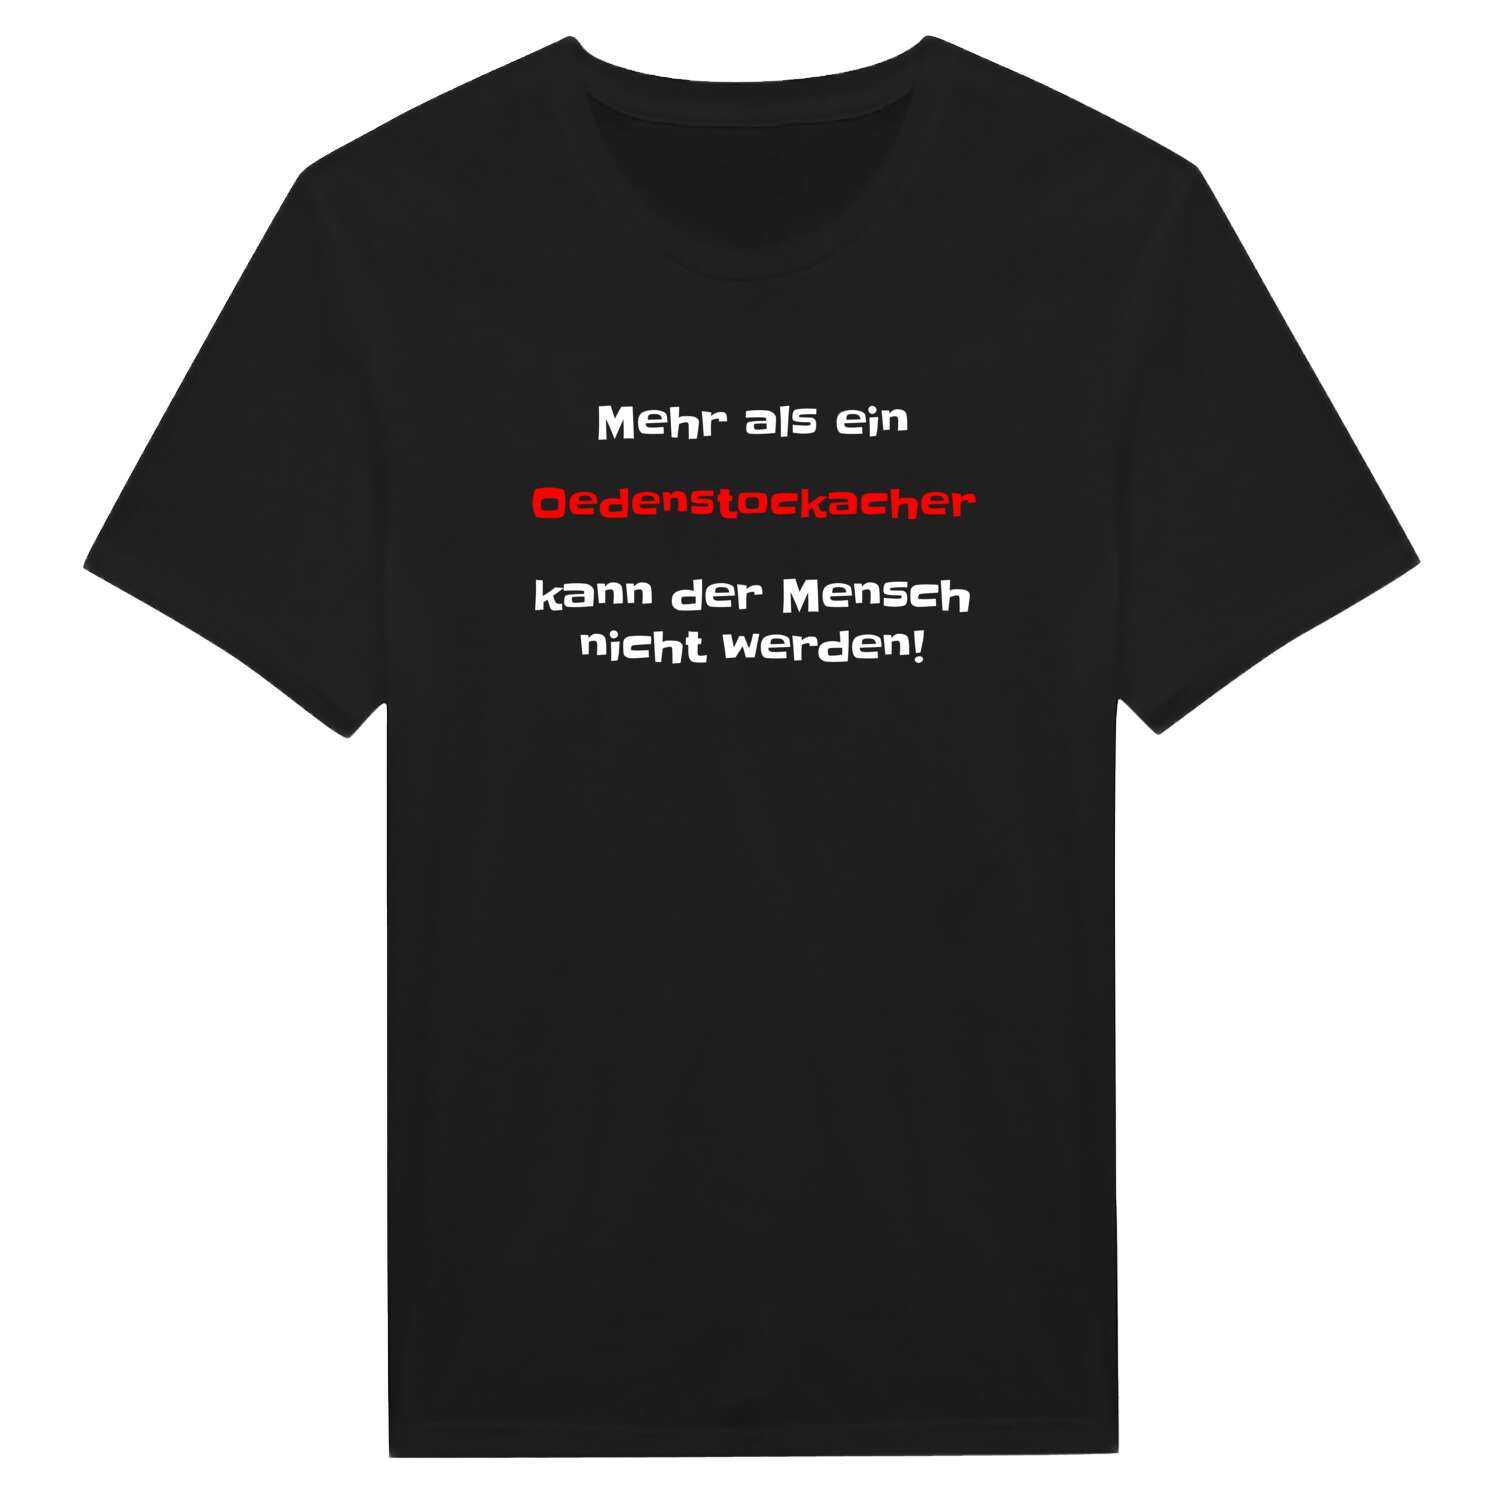 Oedenstockach T-Shirt »Mehr als ein«